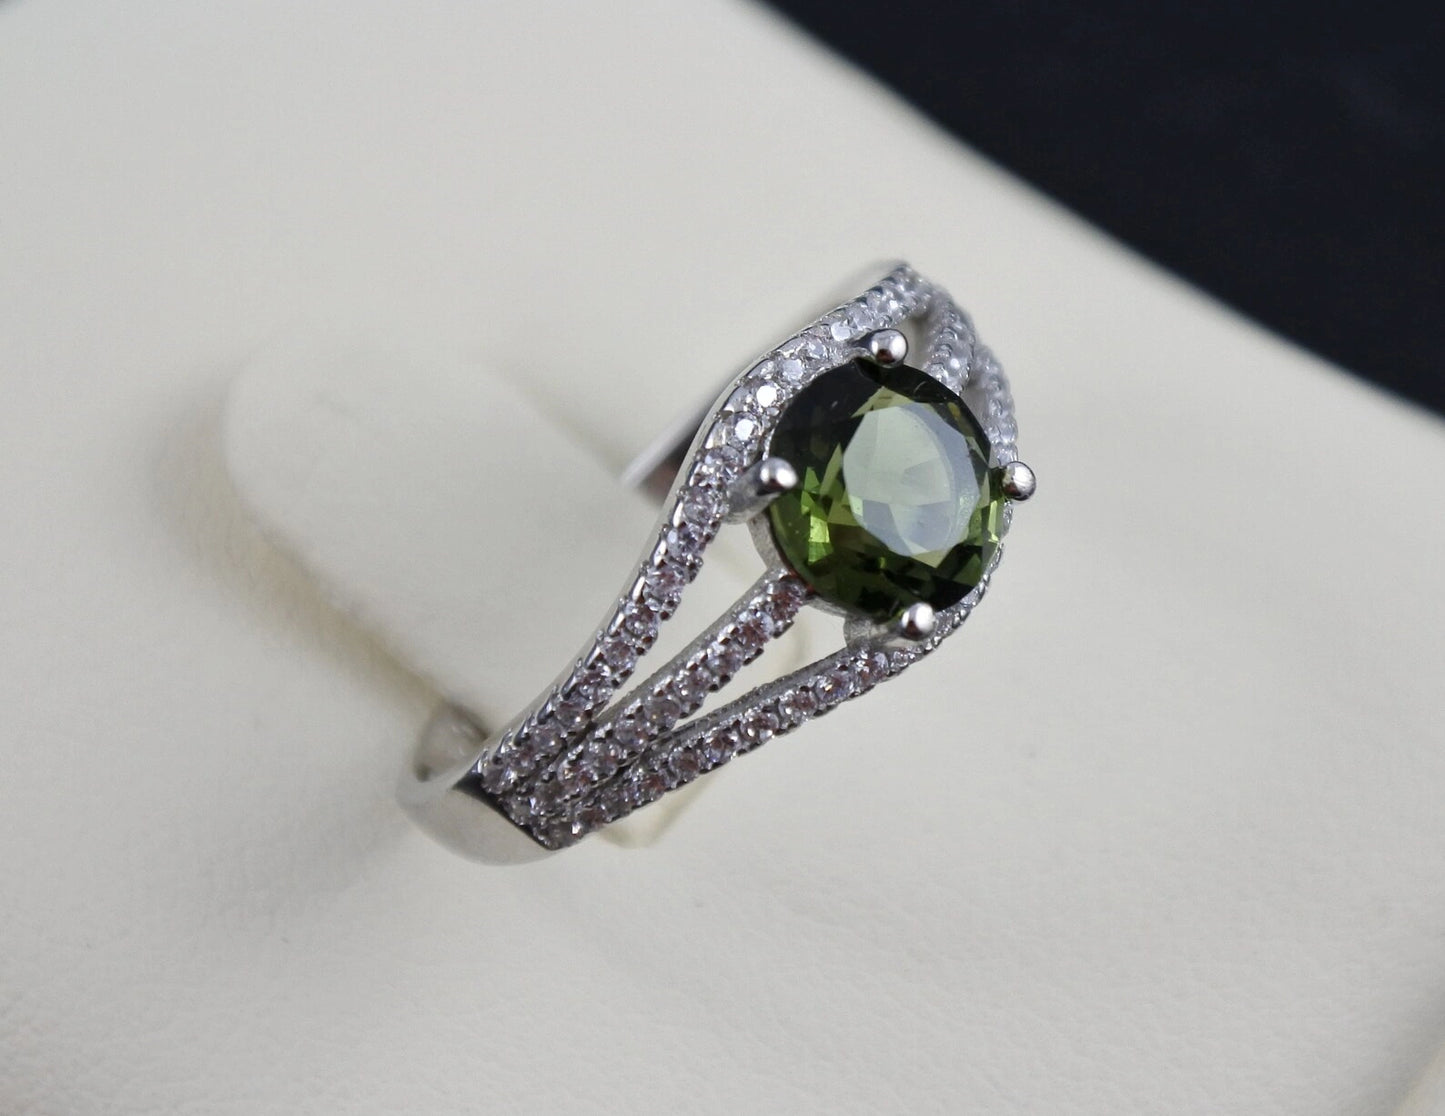 Genuine moldavite ring 7 mm stone, real Moldavite ring Silver, Czech moldavite ring with certificate Moldavite jewelry Moldavite wedding ring